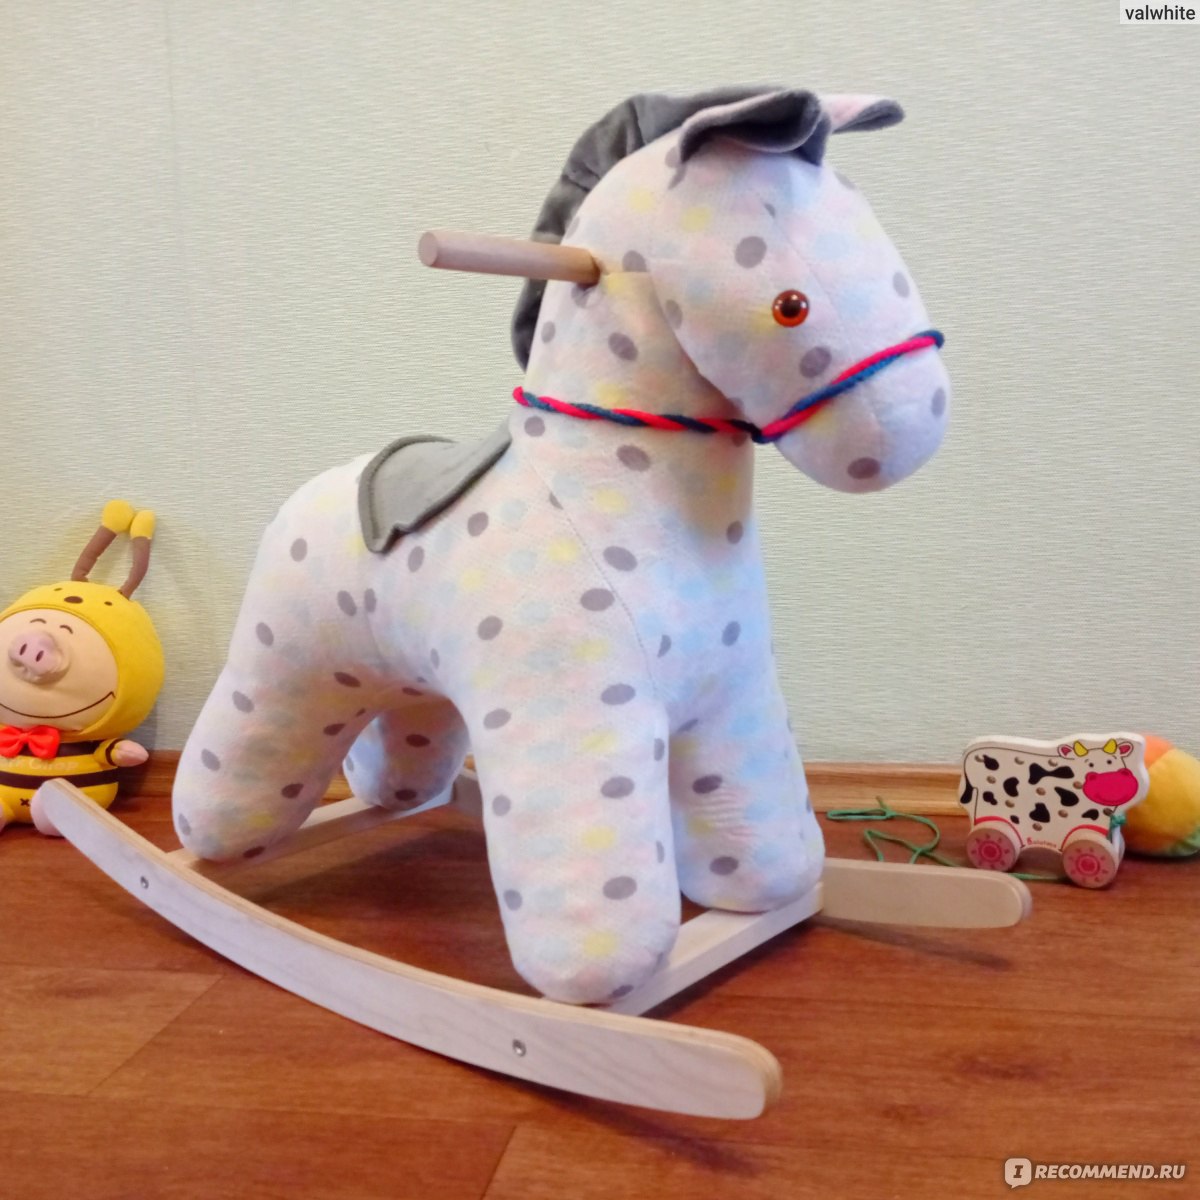 Продажа детских игрушек Алматы - лошадка качалка